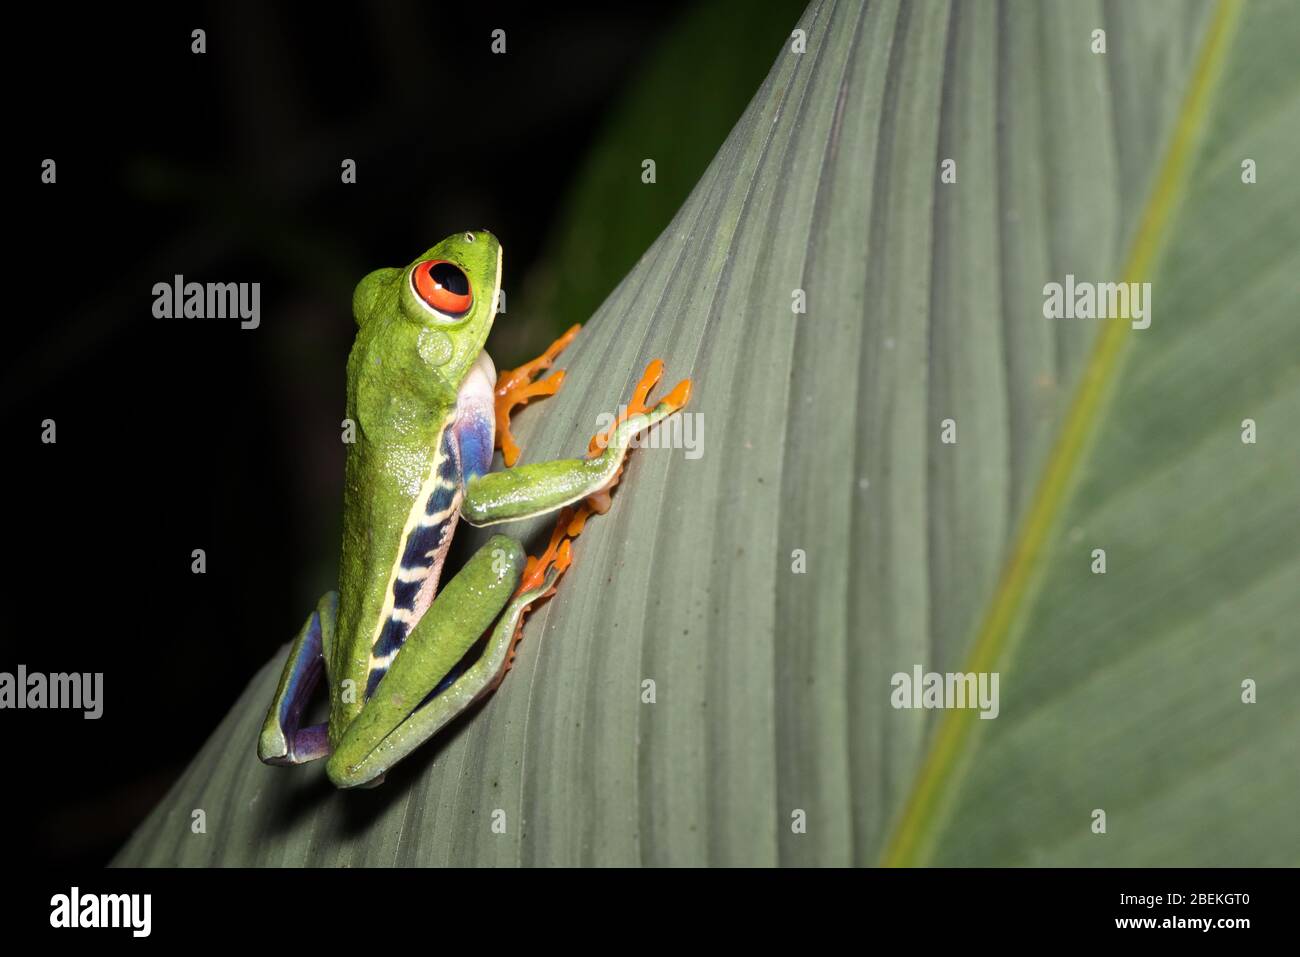 Nachtfotografie eines roteäugigen Baumfrosches oder Blattfrosches oder Gaudy Blattfrosch (Agalychnis callidryas), der auf einem Stamm einer tropischen Pflanze posiert. Costa Rica. Stockfoto